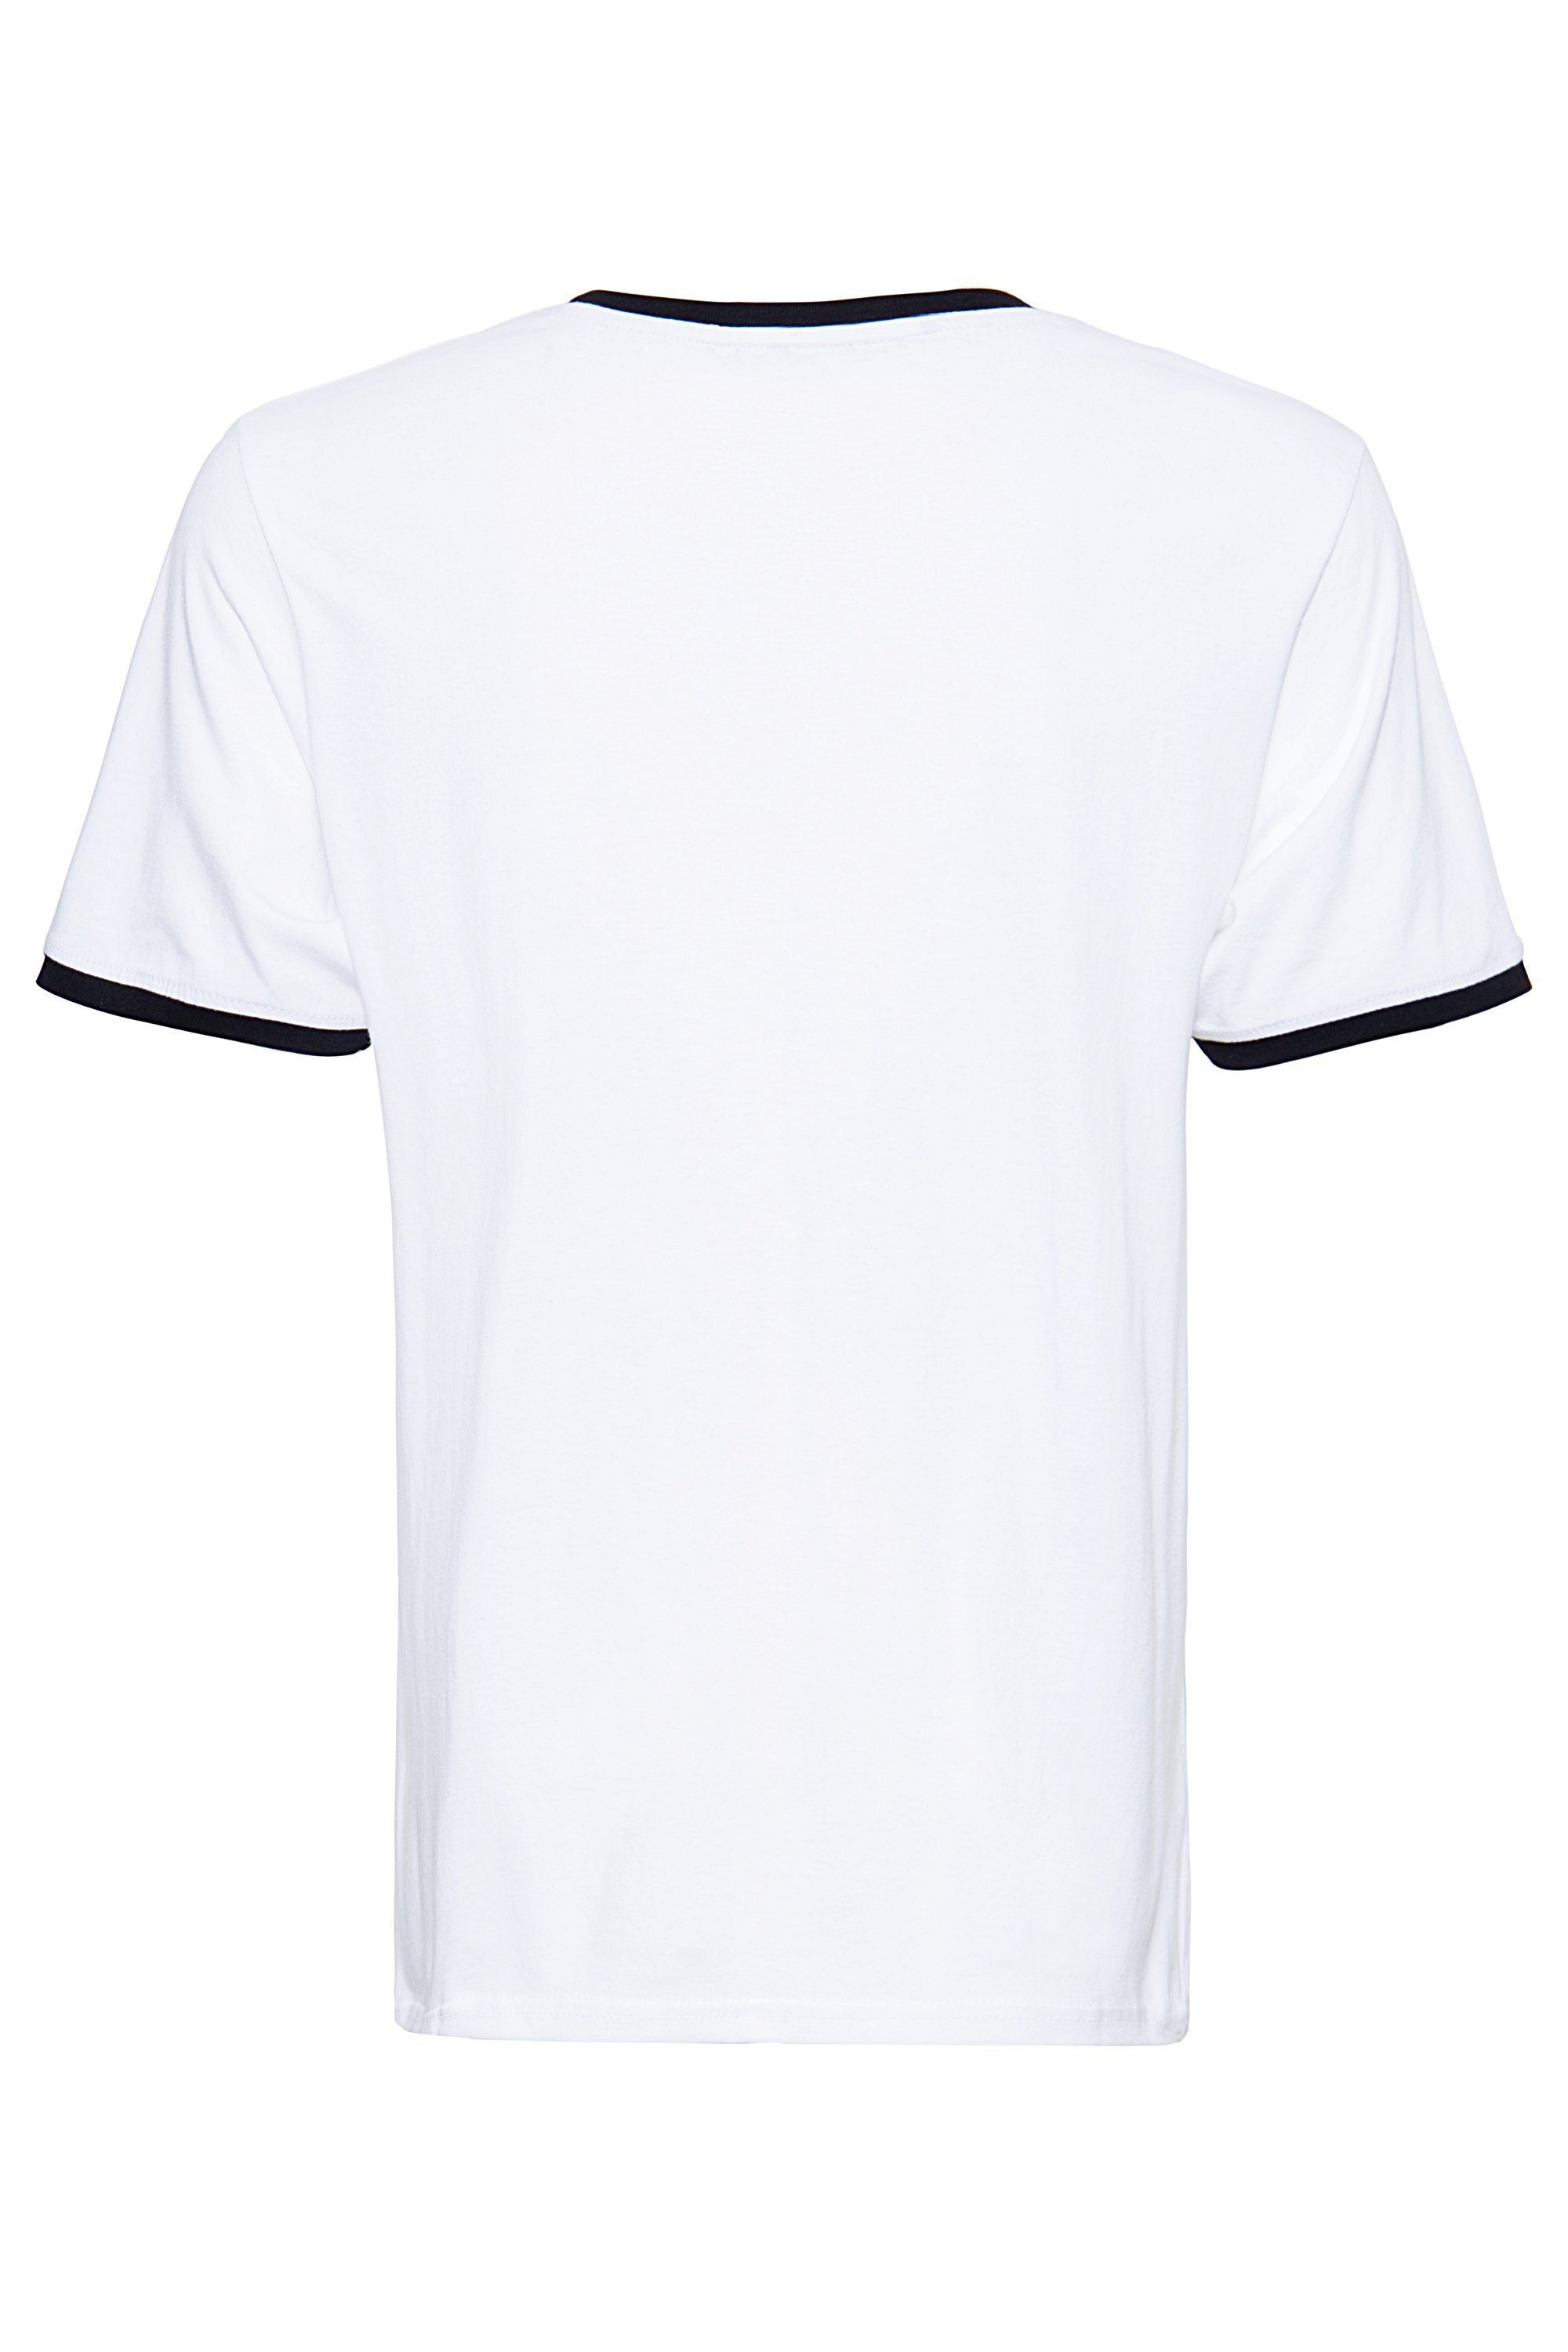 KingKerosin in Ringer-Optik angesagter Speedfreak T-Shirt